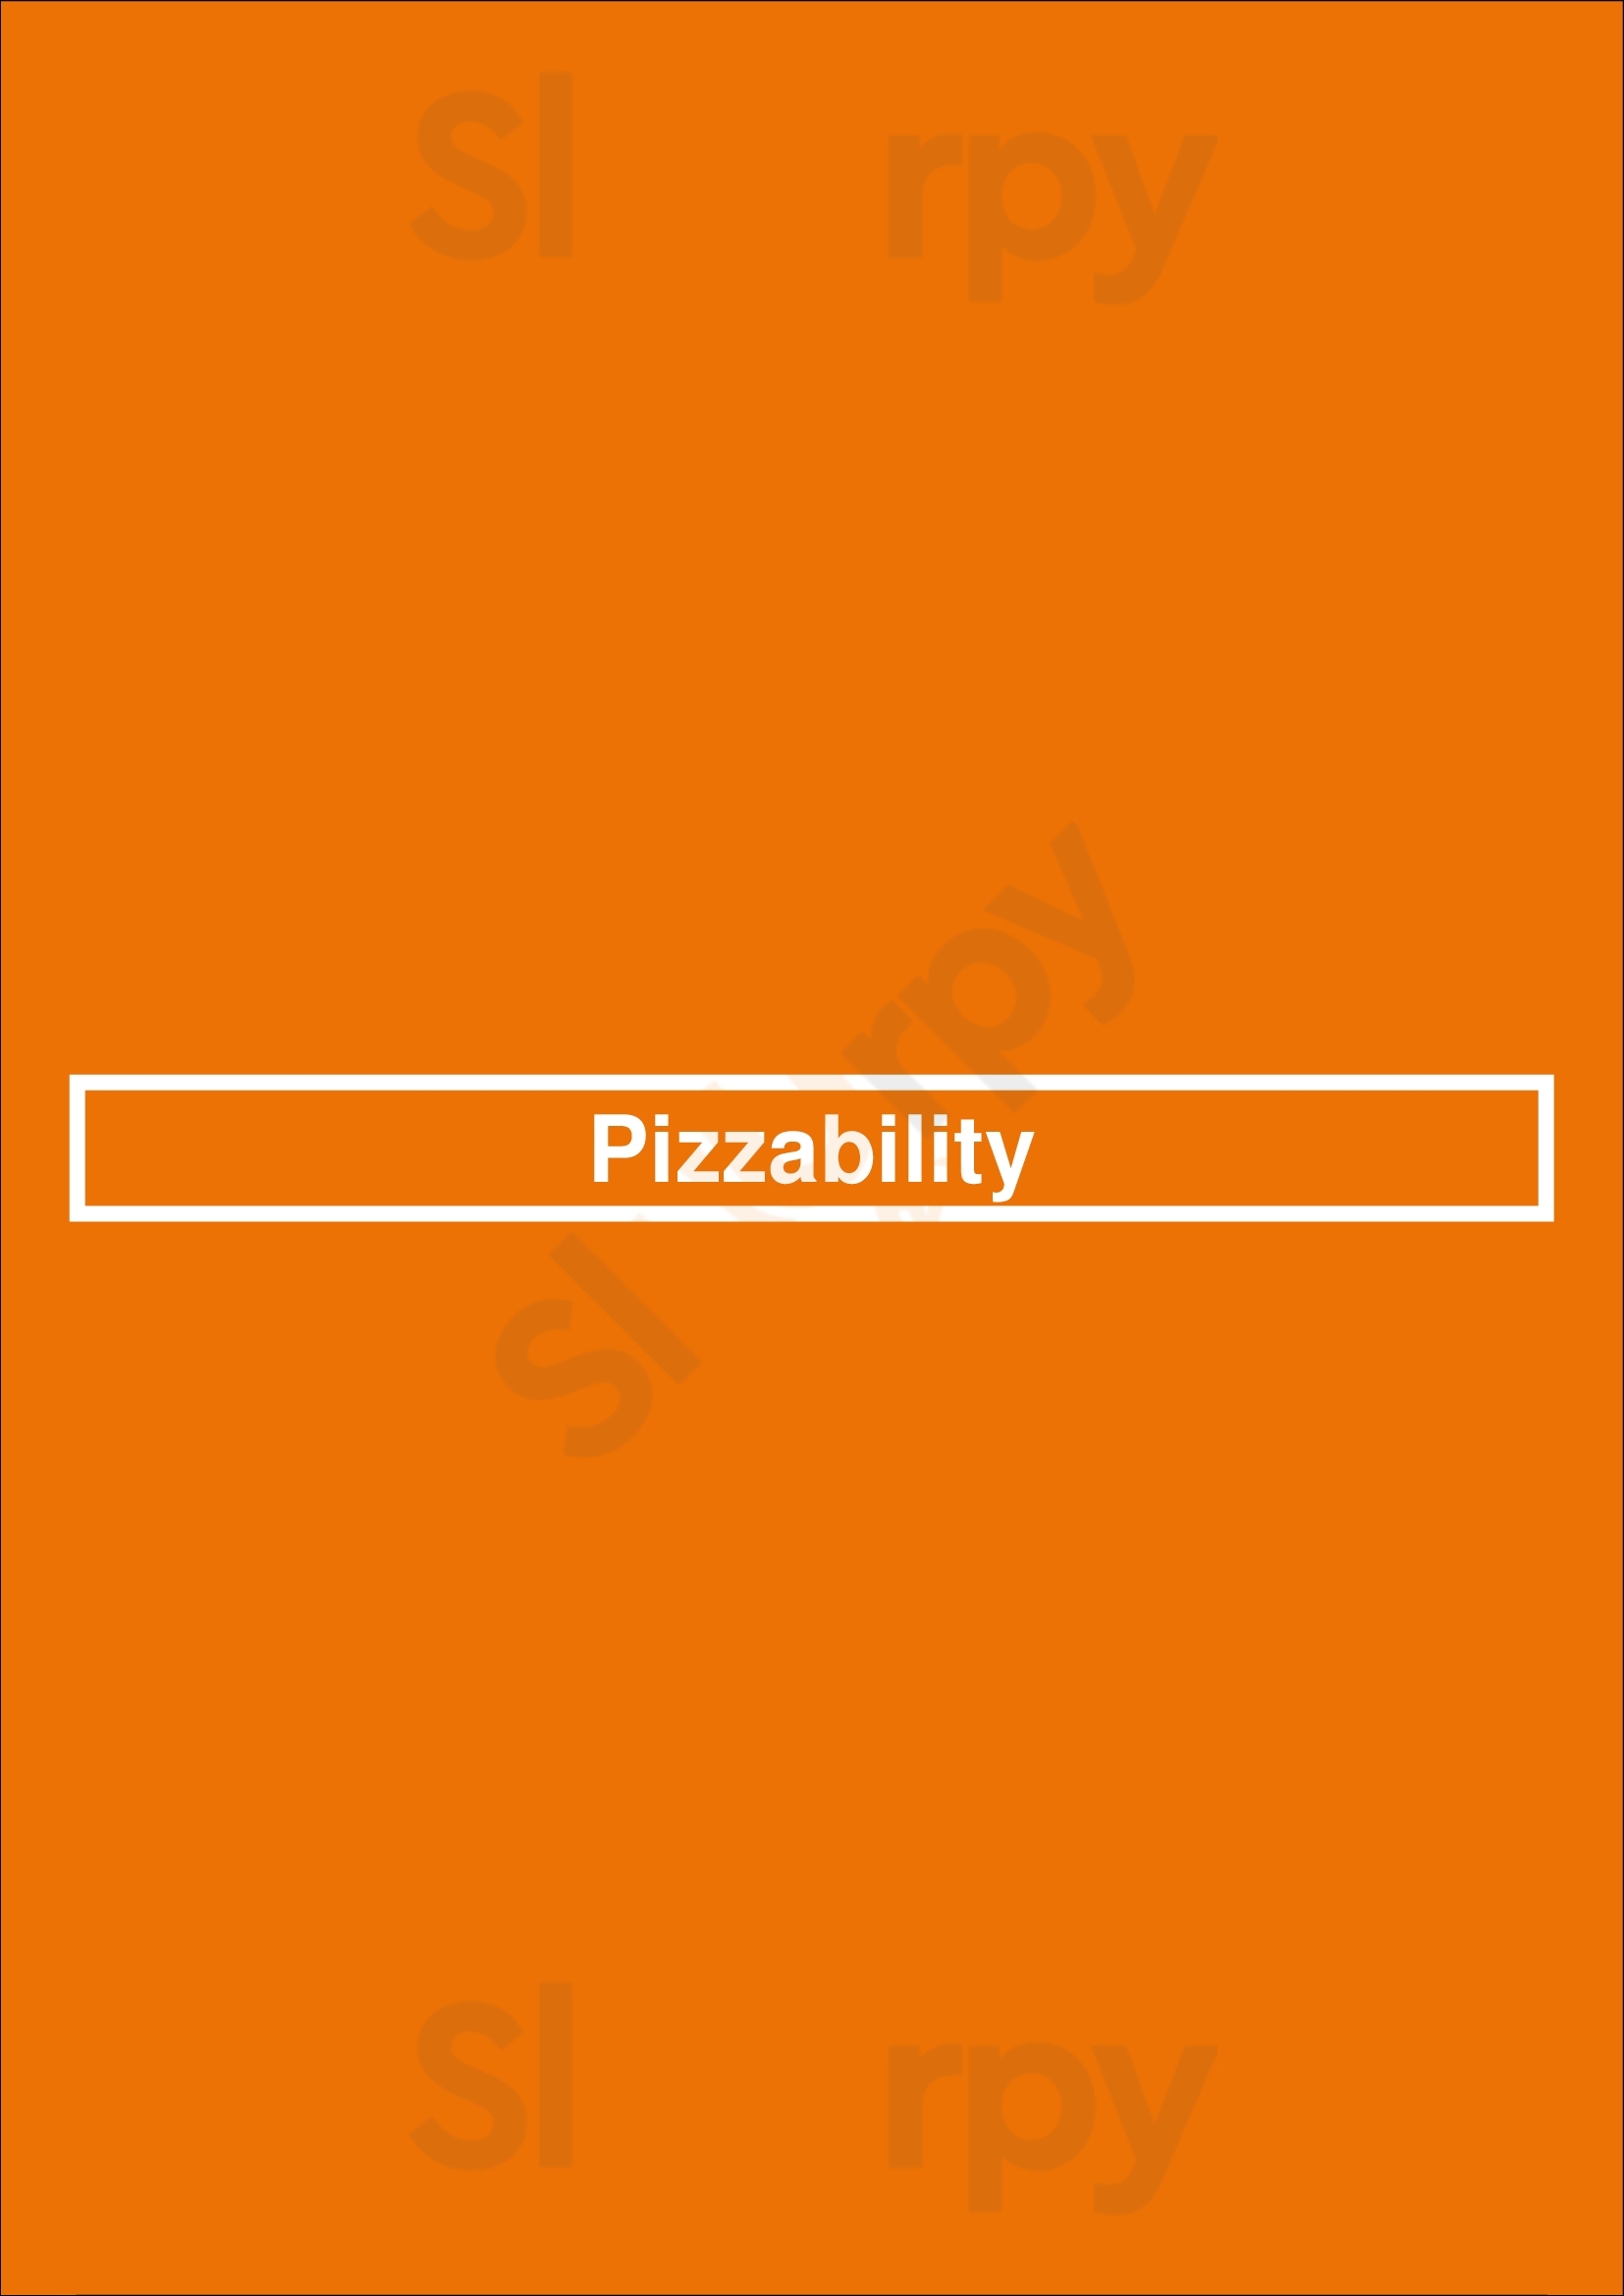 Pizzability Langford Menu - 1